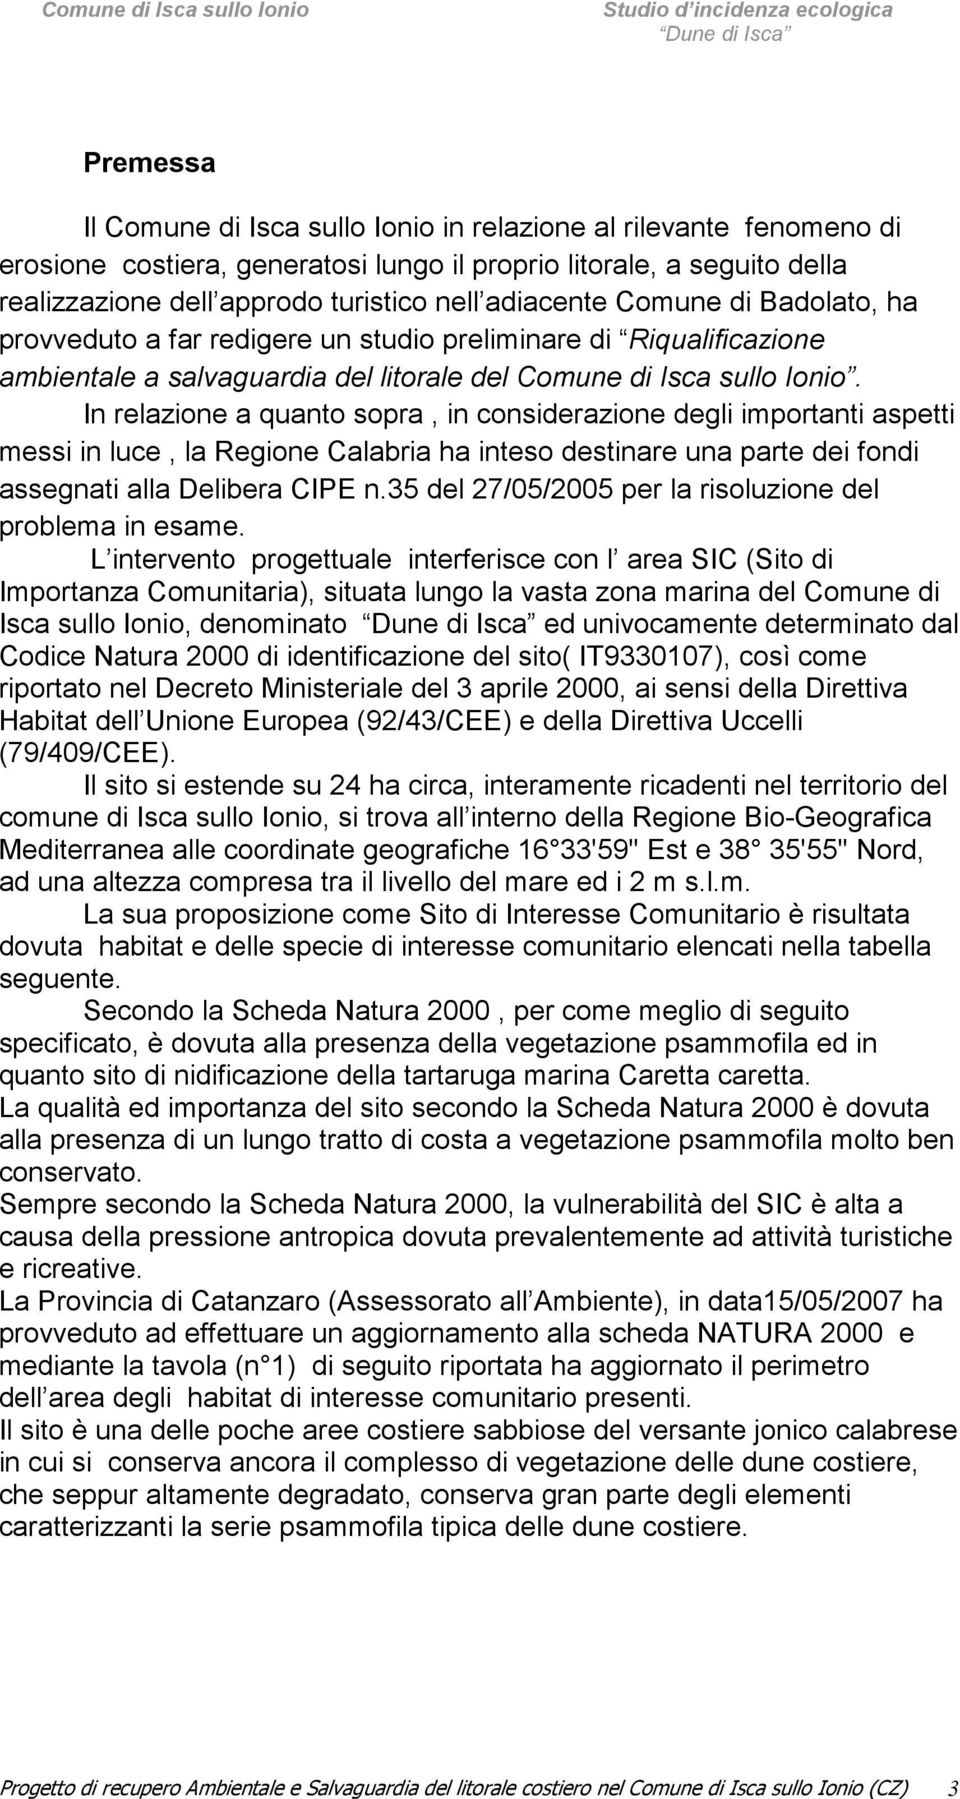 In relazione a quanto sopra, in considerazione degli importanti aspetti messi in luce, la Regione Calabria ha inteso destinare una parte dei fondi assegnati alla Delibera CIPE n.